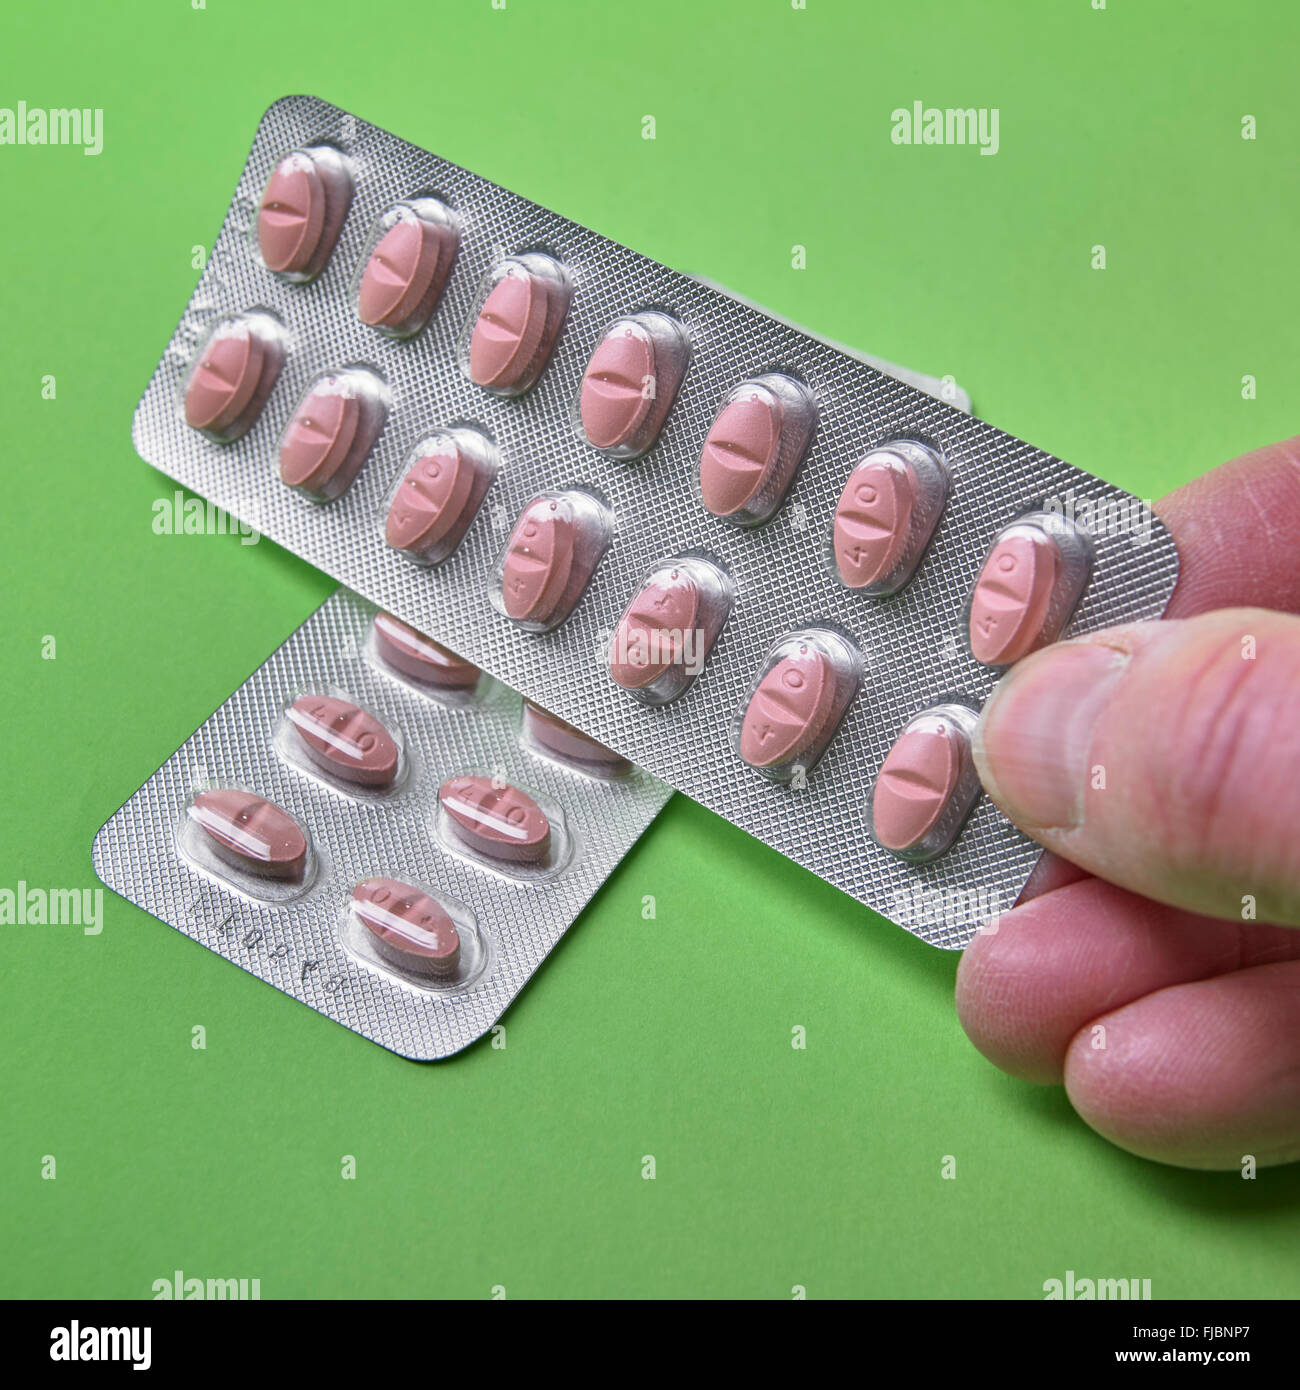 Hombre mano sujetando las estatinas, medicamentos que reducen el colesterol, en envases tipo blister sobre fondo verde Foto de stock